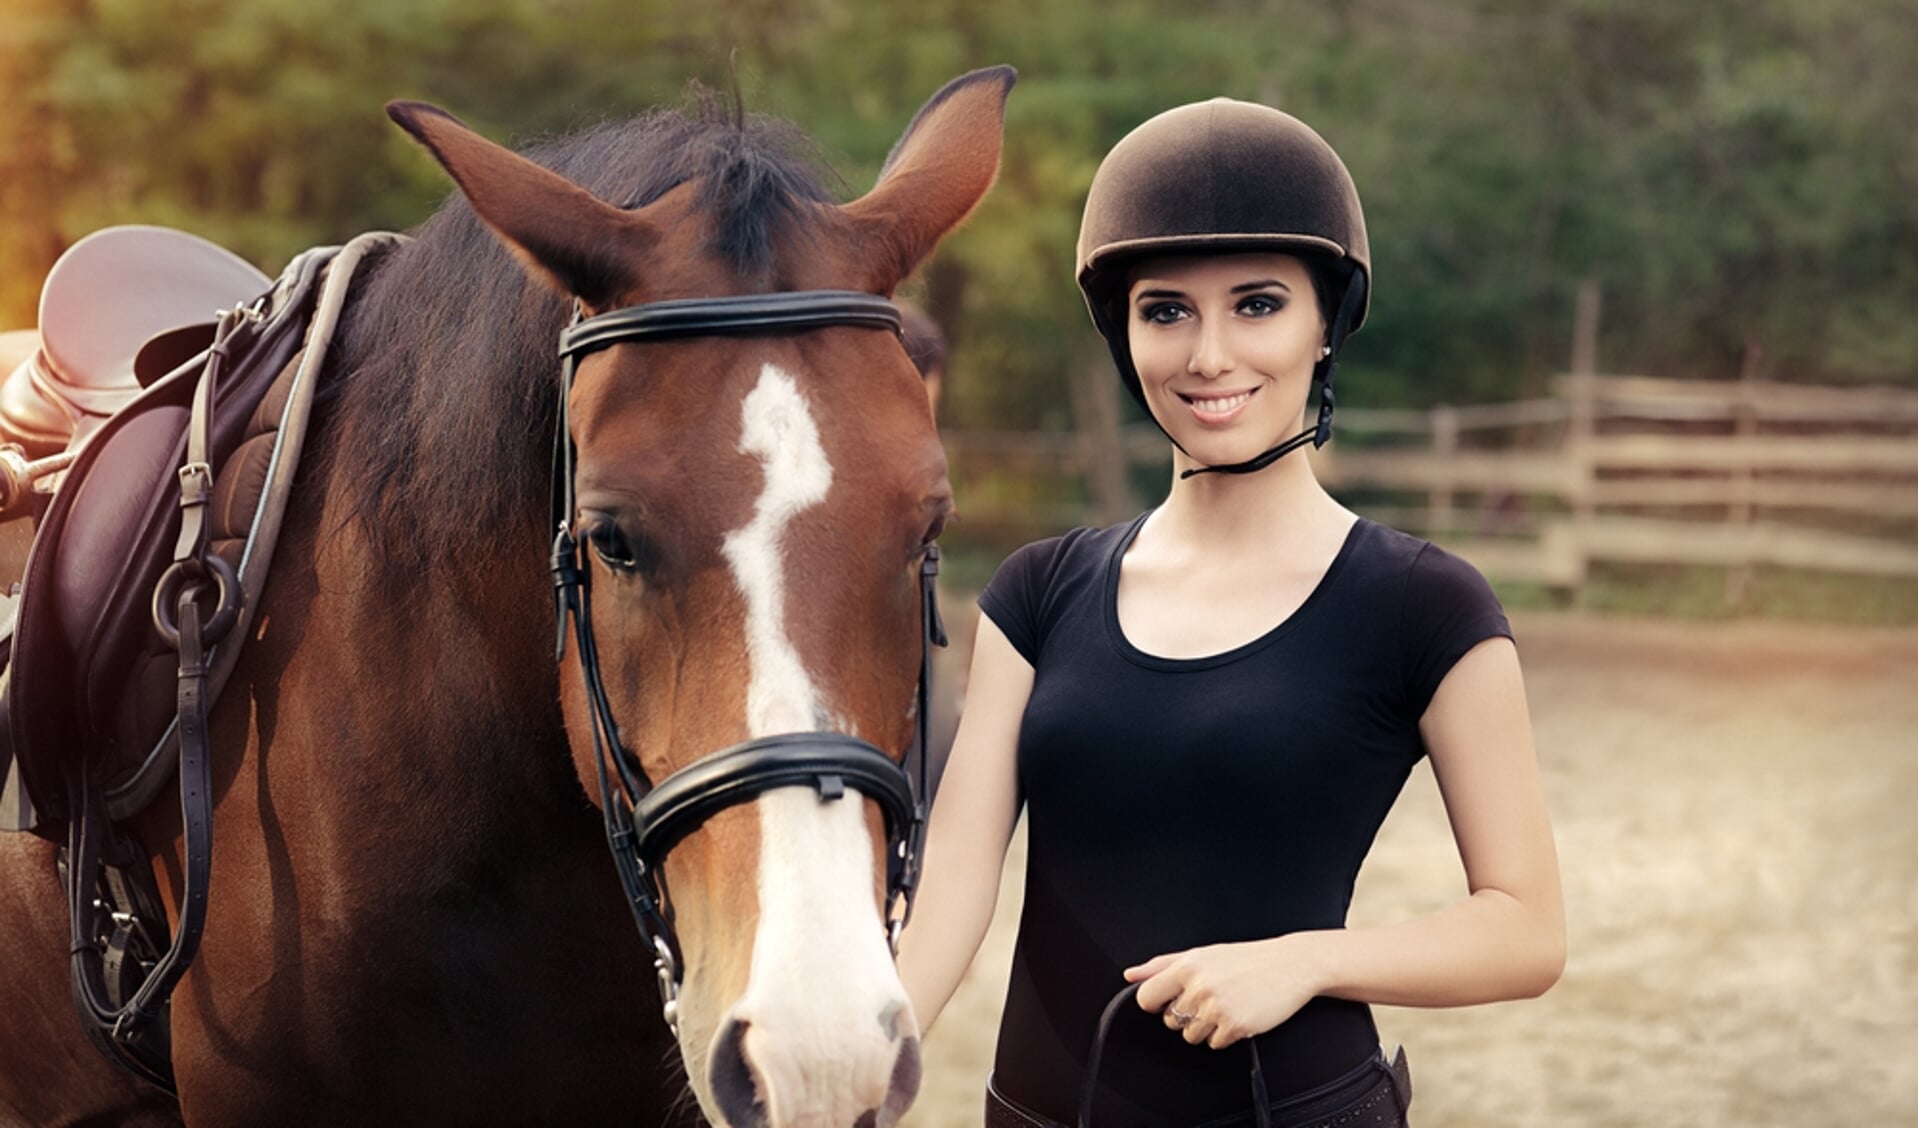 Manhattan Geheim pond Paardrijden is gezond | Het onafhankelijke paarden(sport)medium